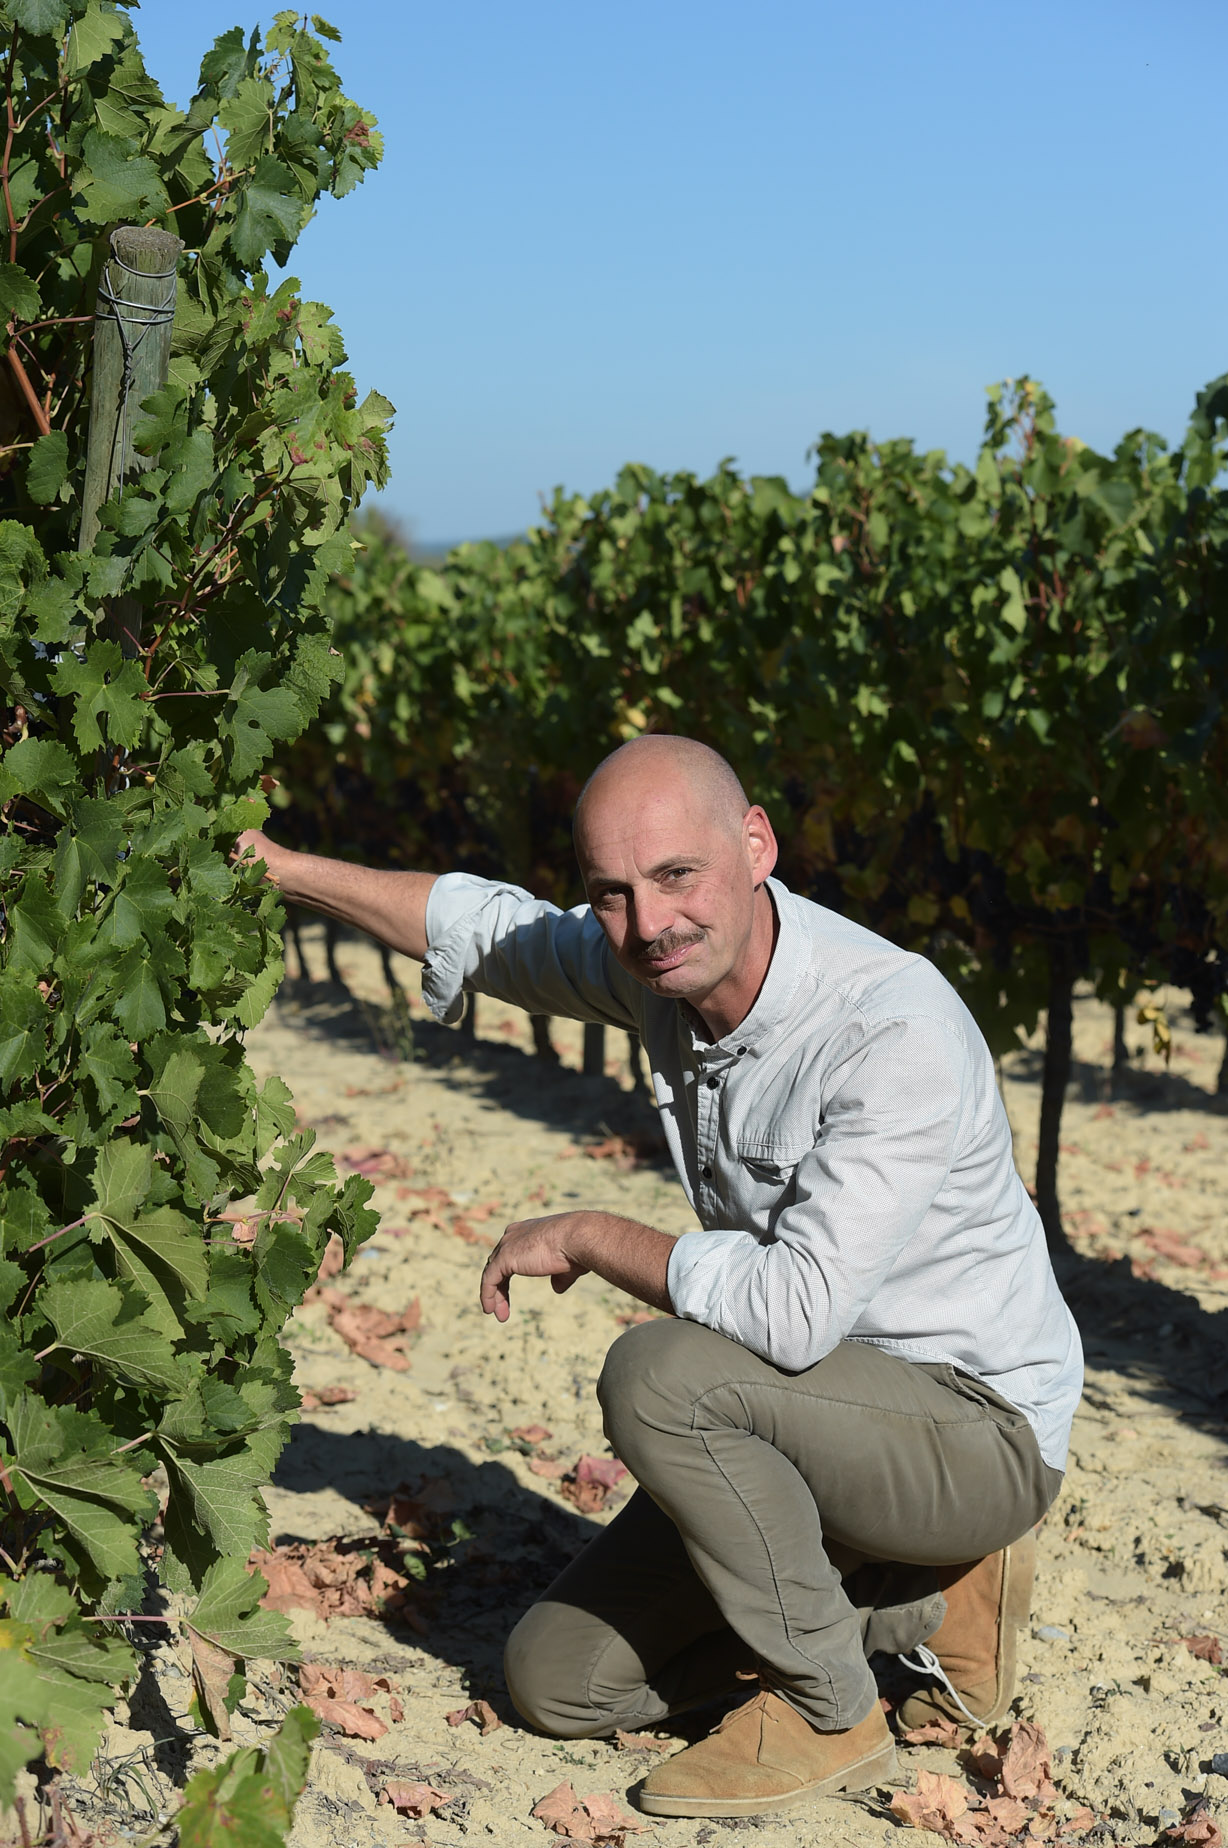 Domaine de Cassagnau Chardonnay IGP Pays d'Oc Blanc 2016